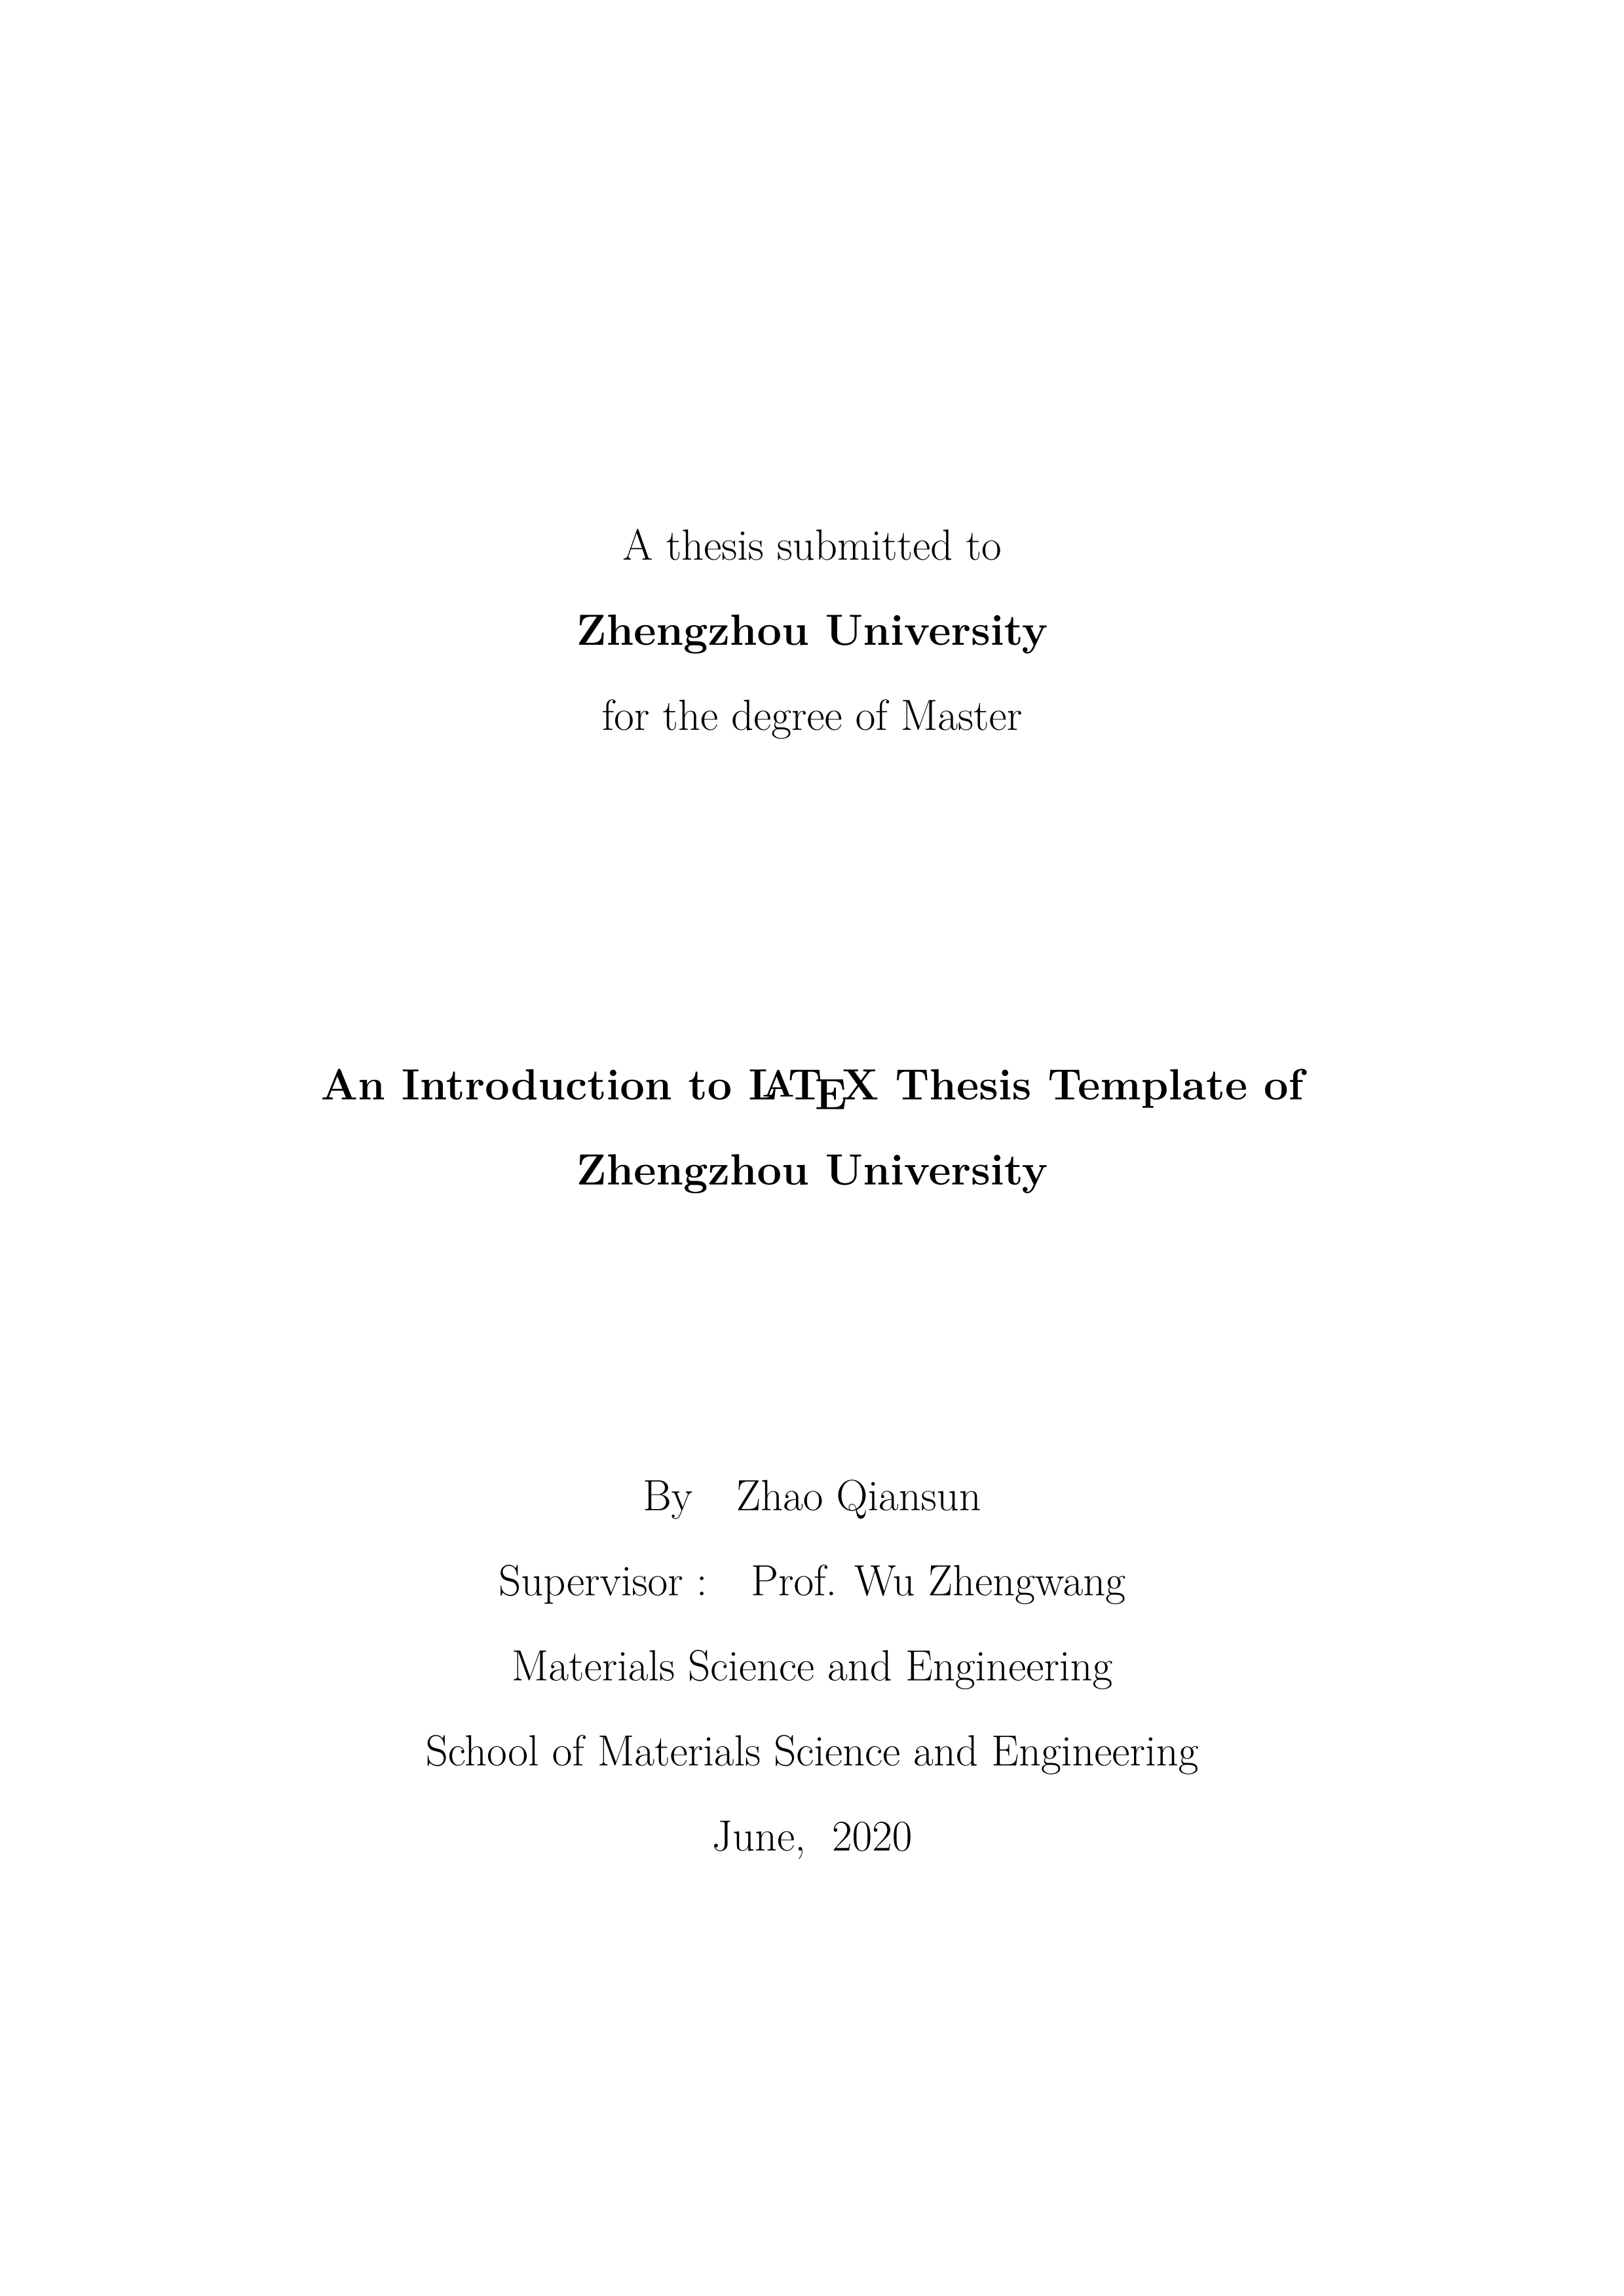 郑州大学本科毕业设计(论文)和研究生学位论文(含 硕士和博士) LaTeX 模版